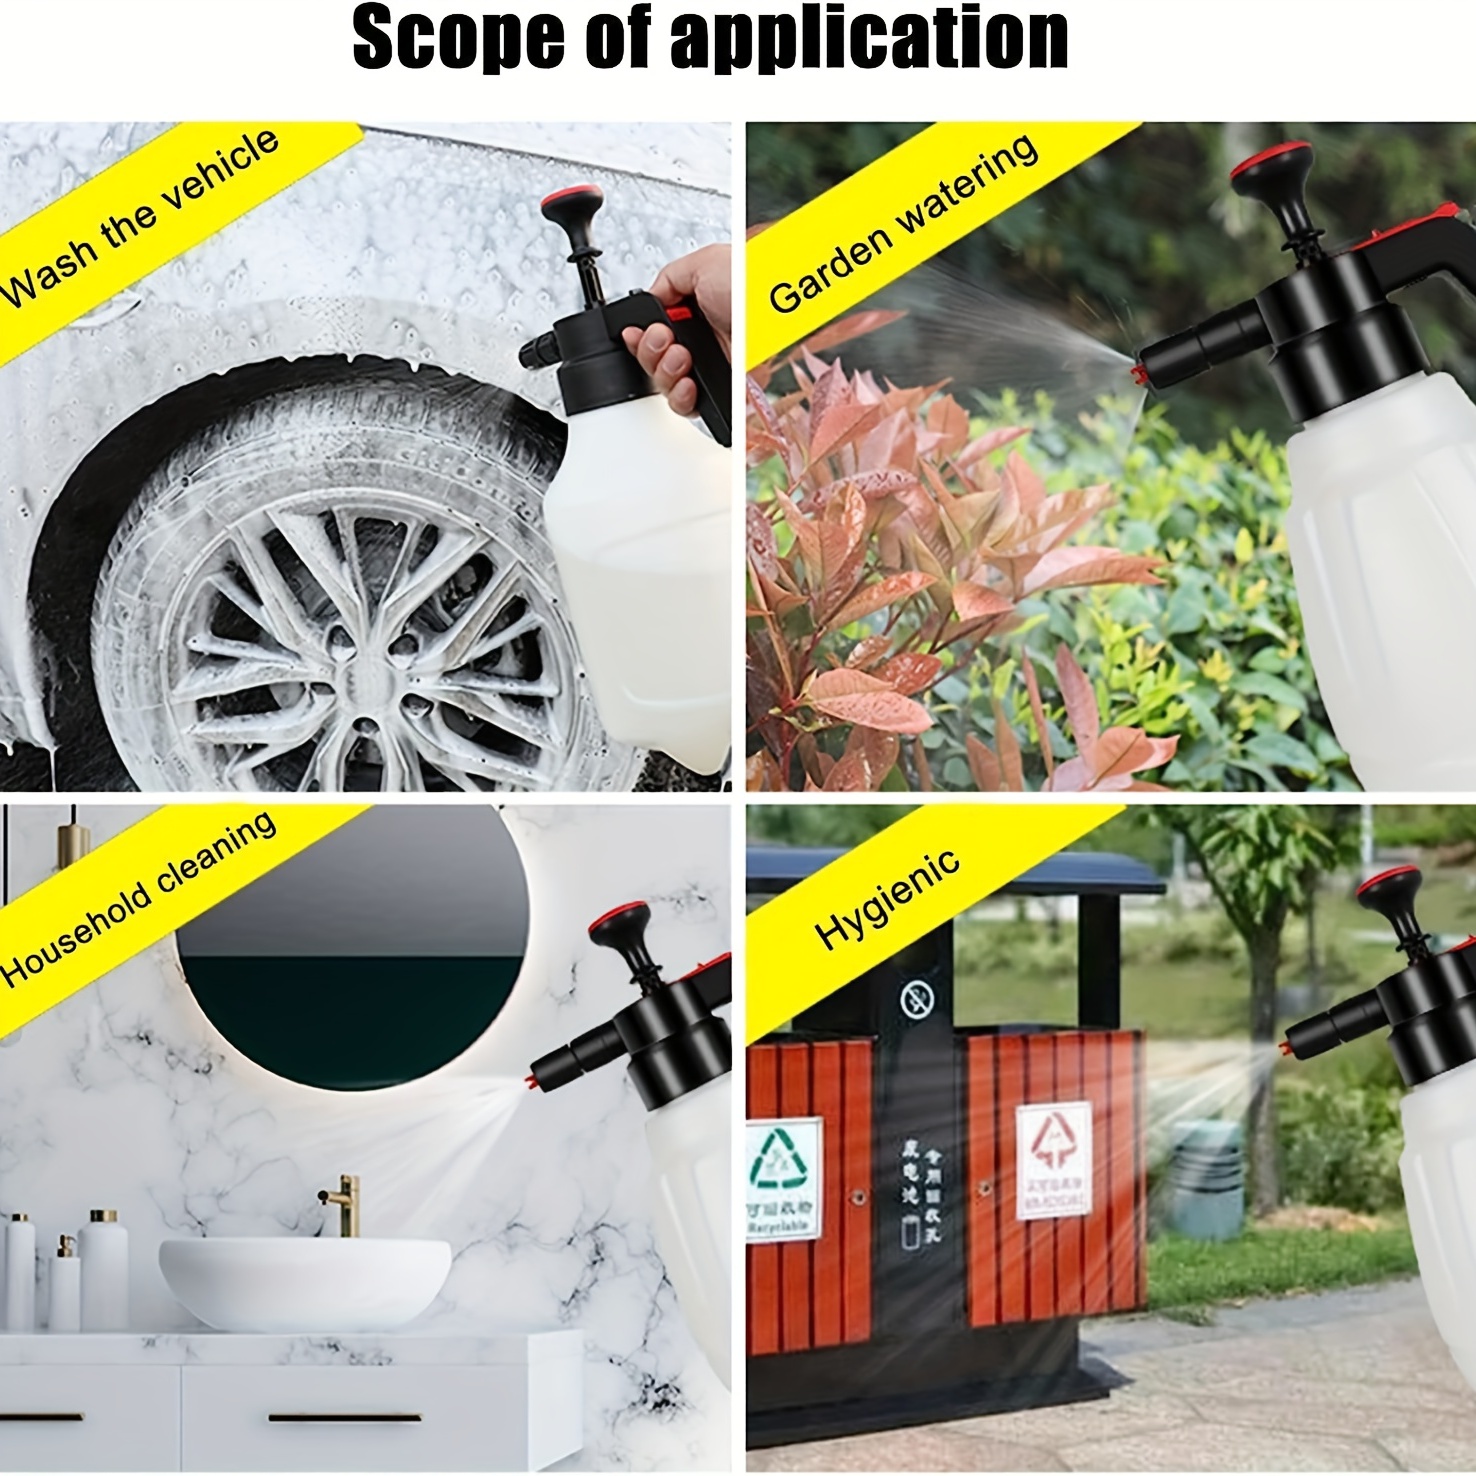 Car Wash Foam Sprayer, 2L Portable Sprayer Pump, Handheld Foam Sprayer,  Multifunctional Foam Sprayer Car Wash Pump Bottle with Scale, Pressurized